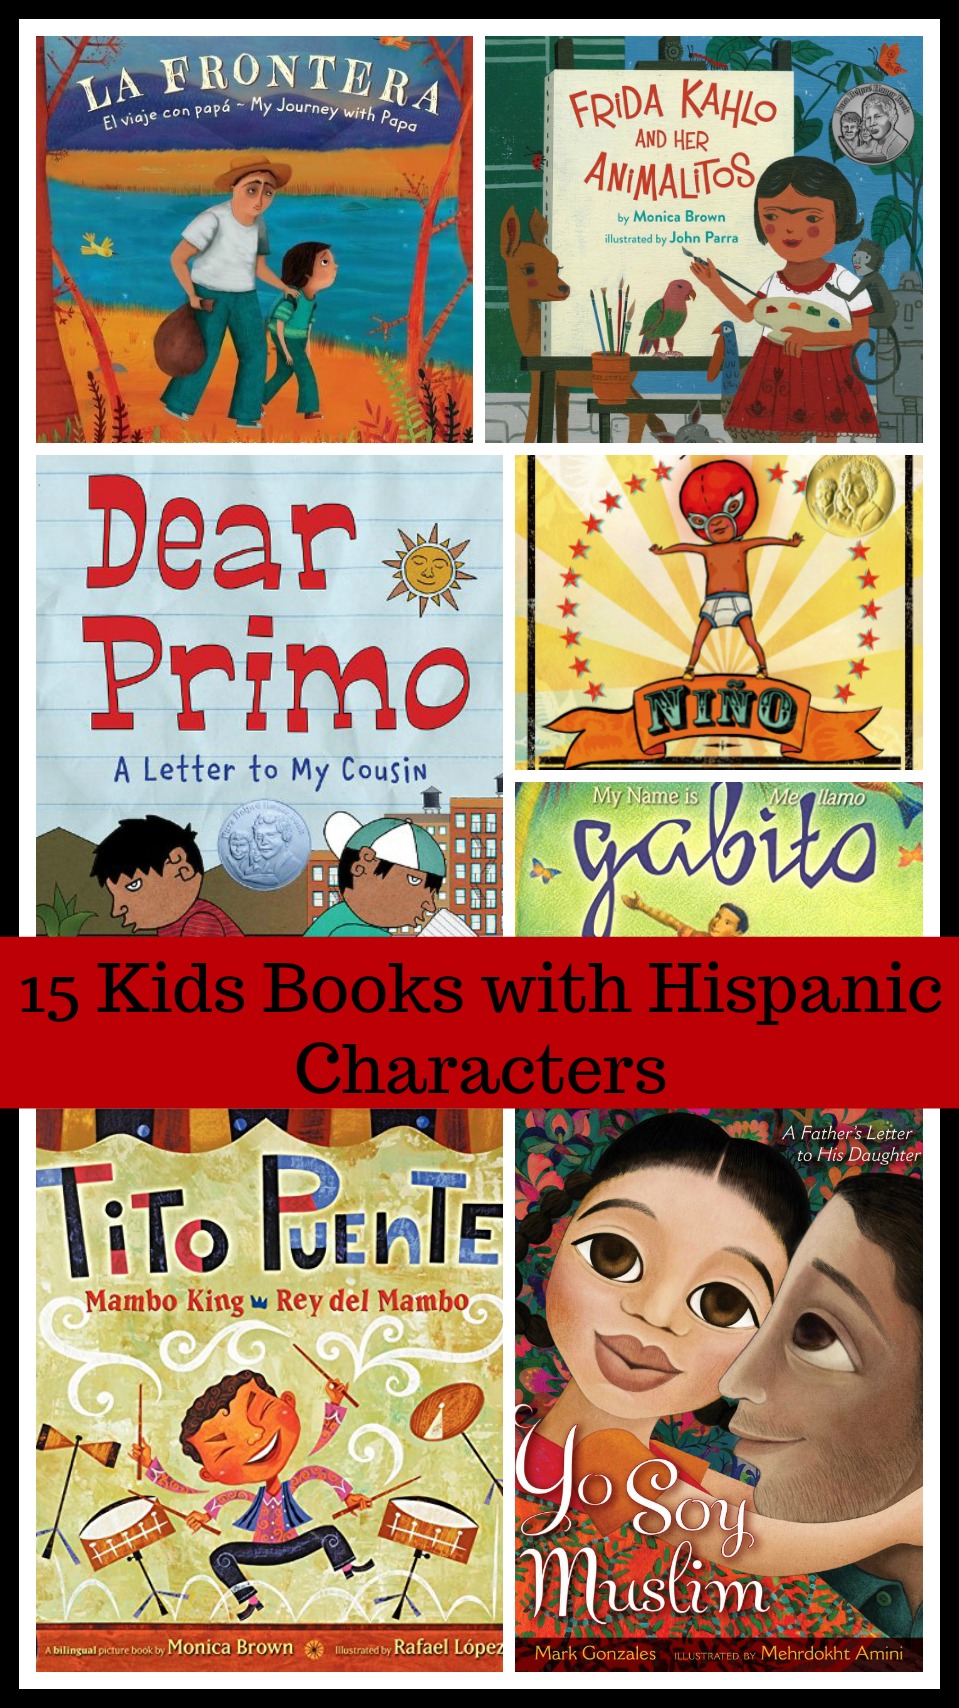 Kids Books with Hispanic Characters